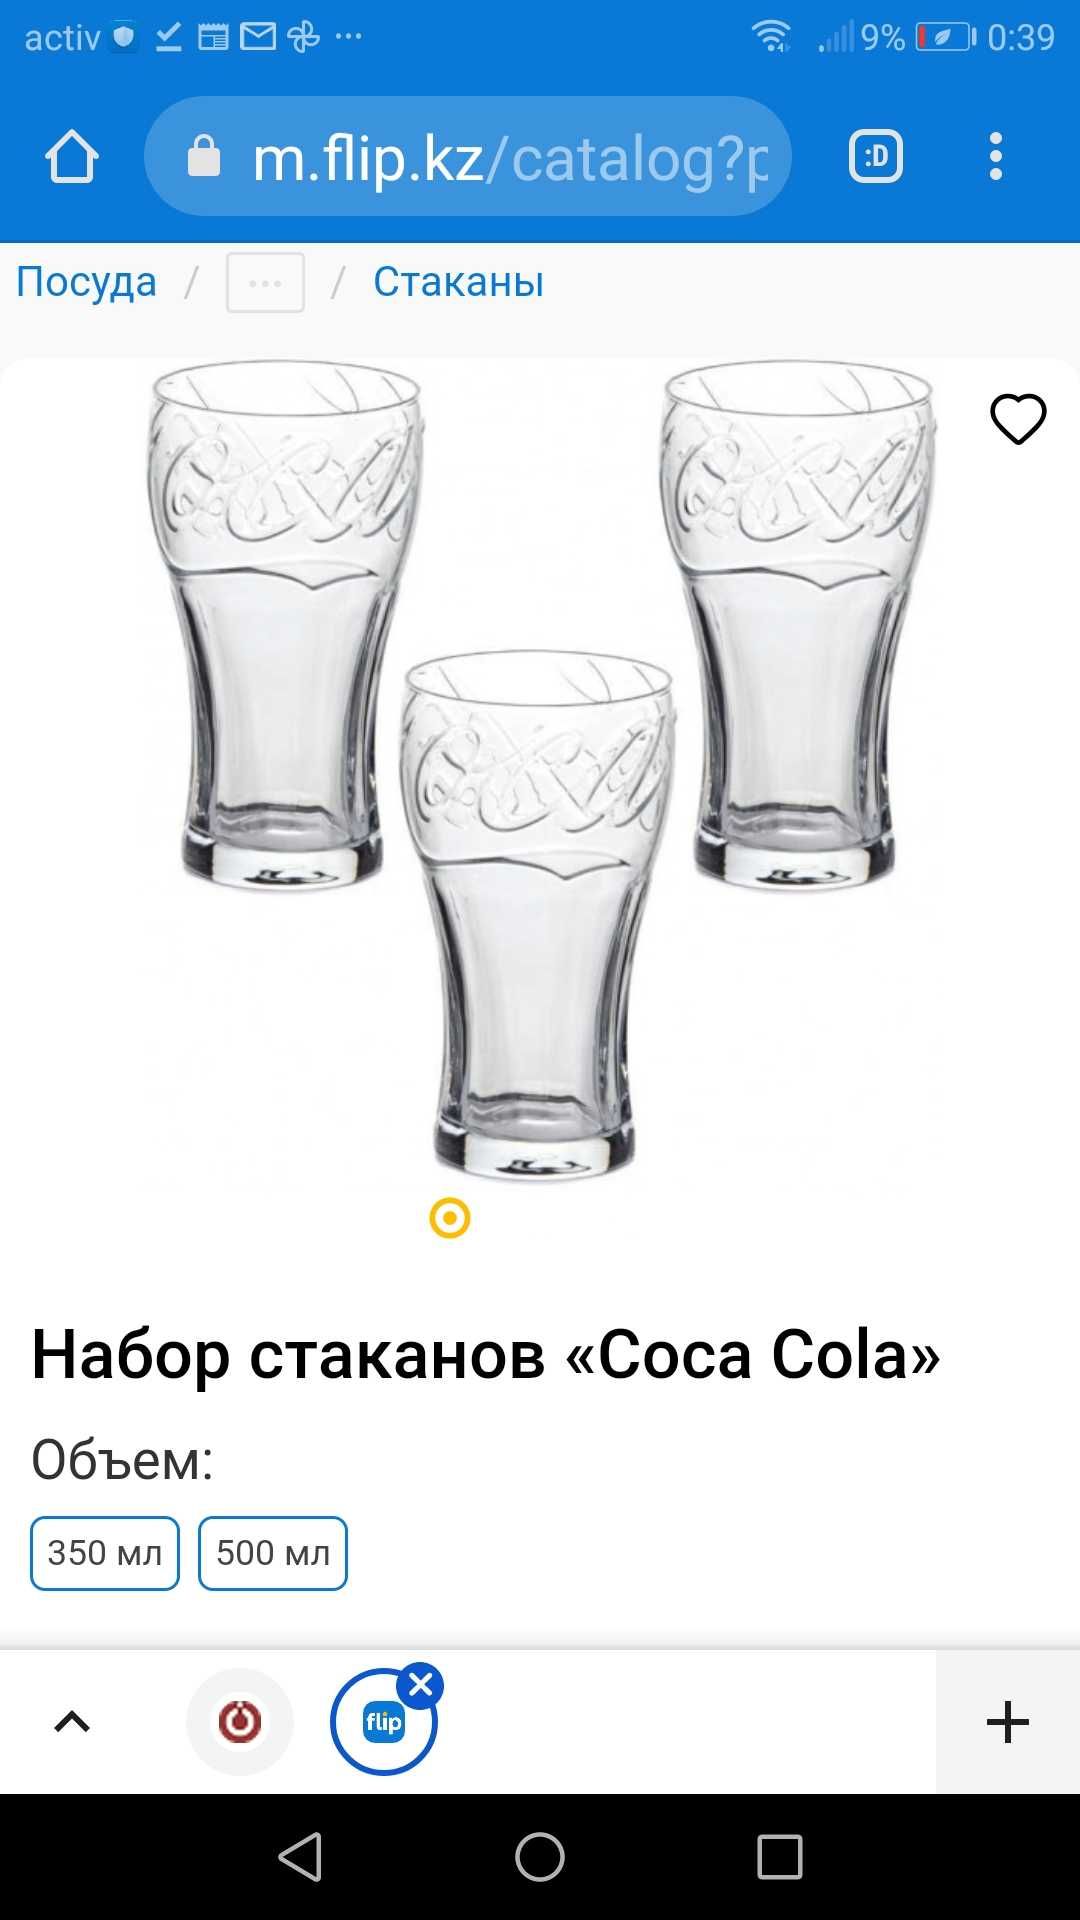 Новые фирменные стаканы Coca Cola, и другие стаканы